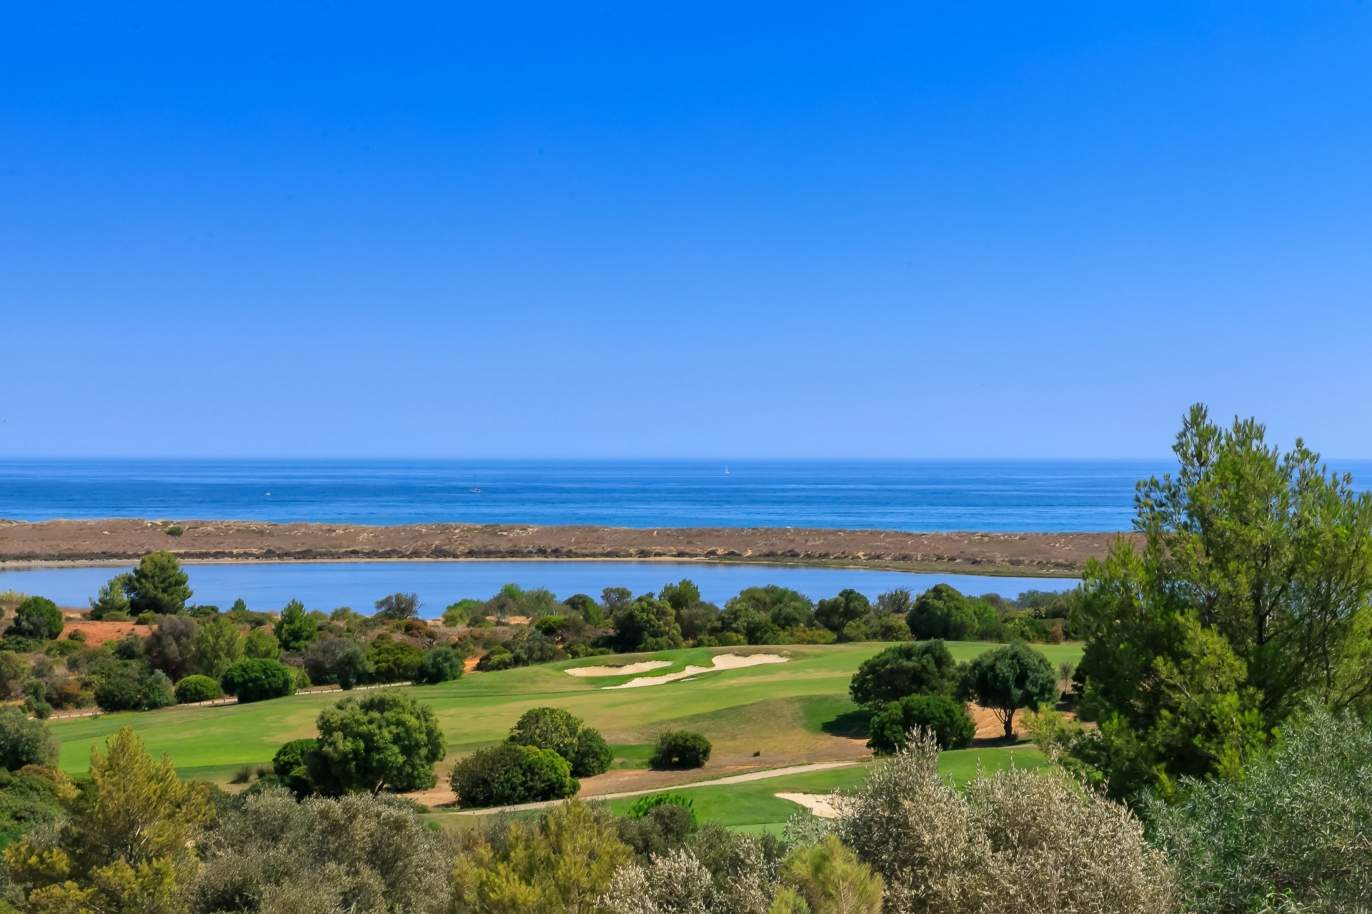 Terrain à vendre dans un complexe de golf, Lagos, Algarve, Portugal_123002